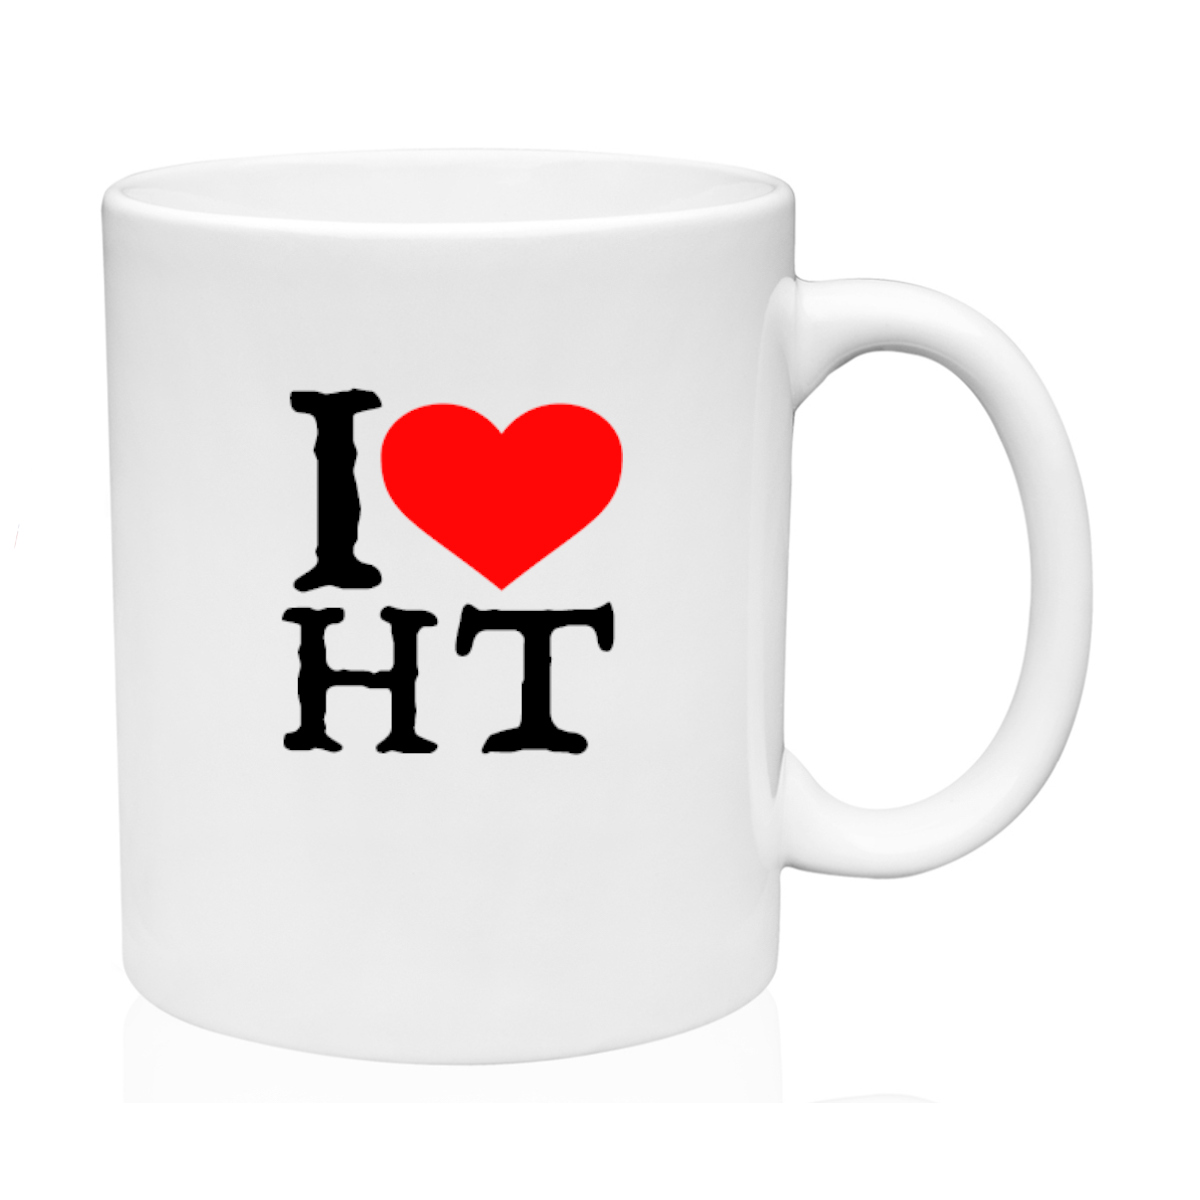 I Love Haiti Mug 11oz